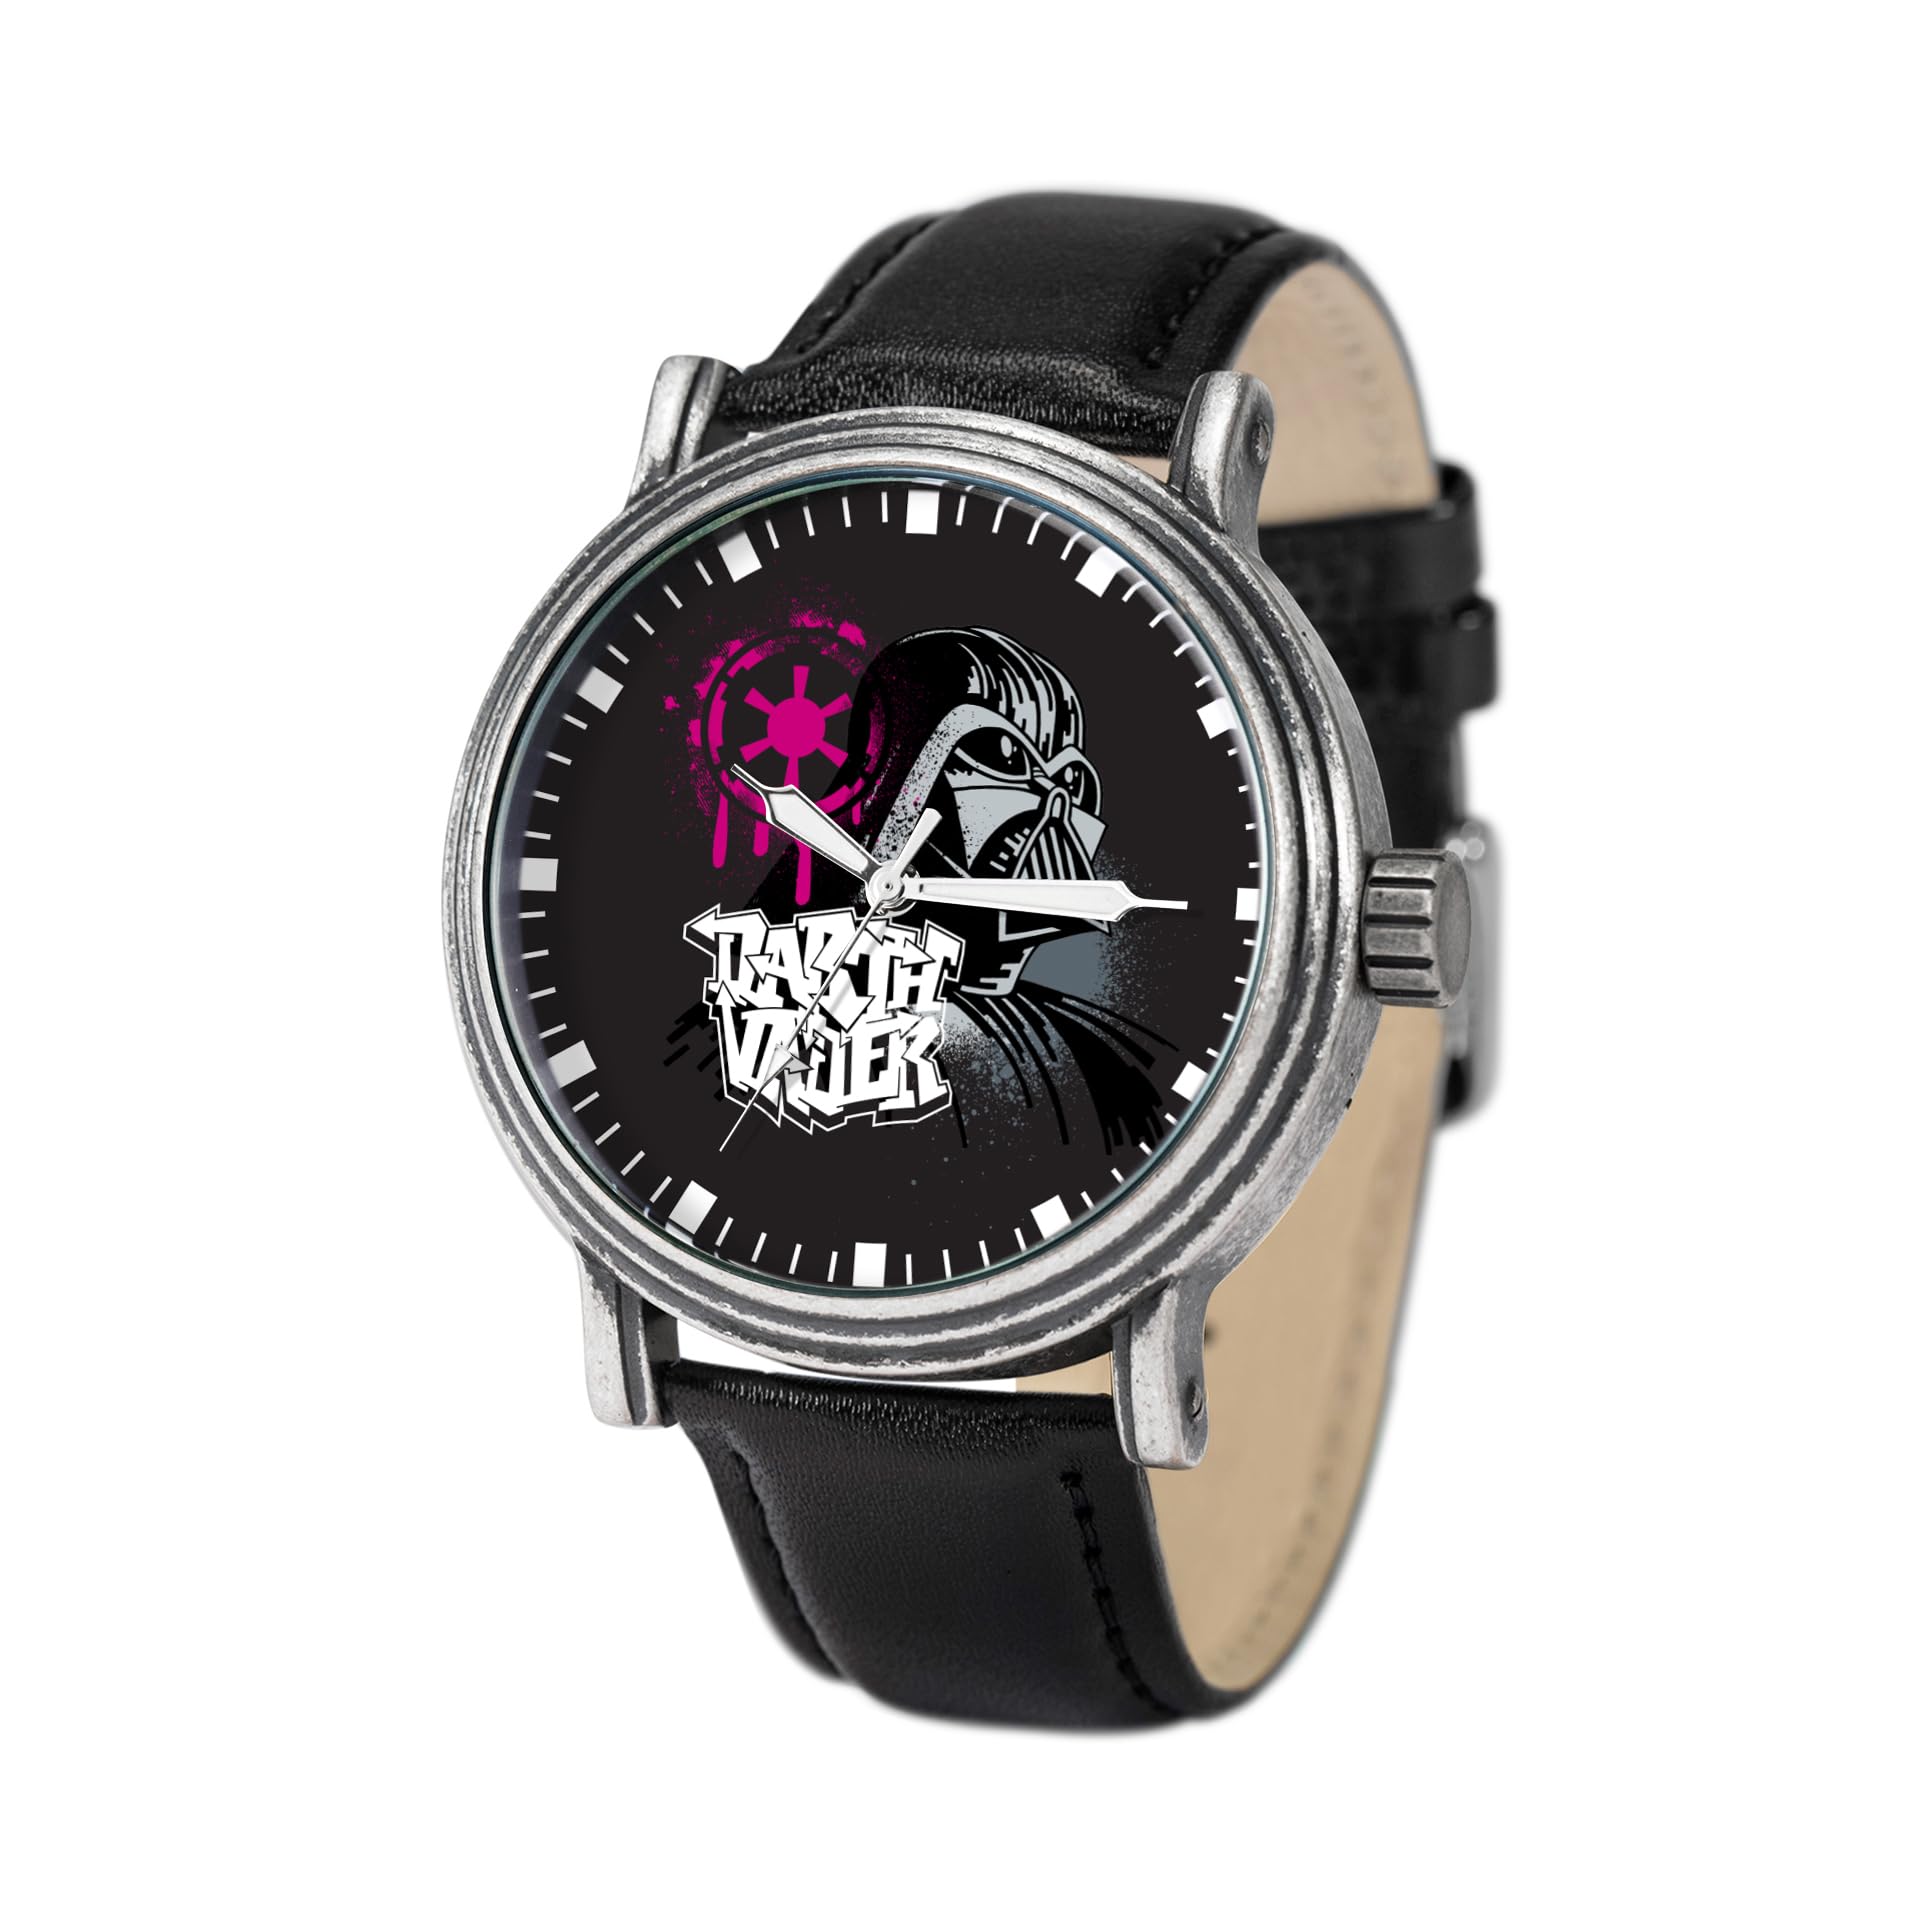 STAR WARS Adult Watch, Vintage Analog Quartz Watch